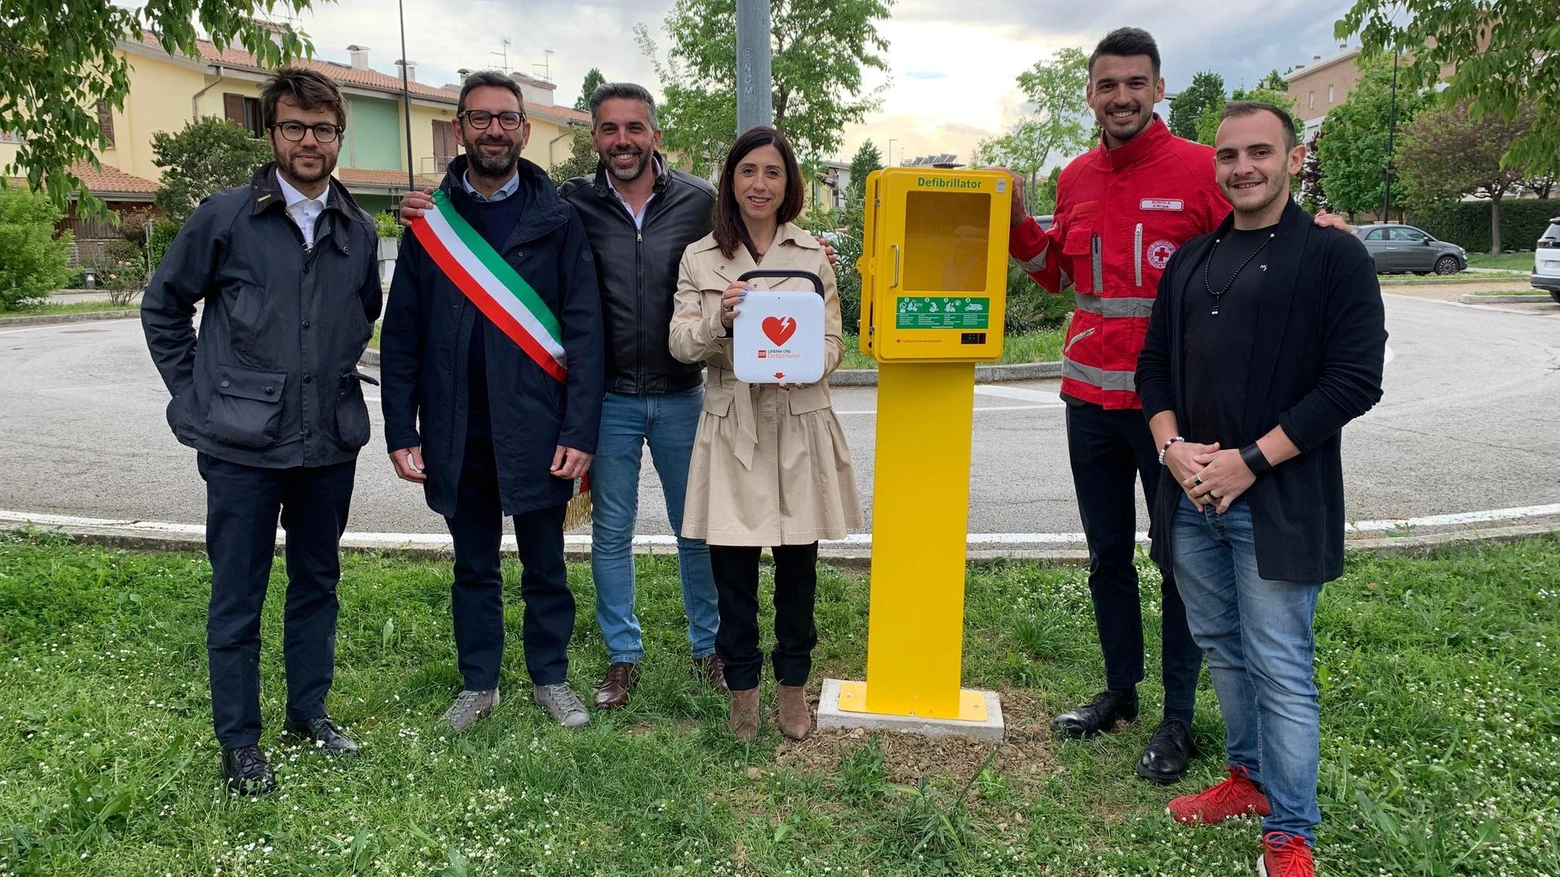 Inaugurato parcheggio via Cangiotti a Villa Fastiggi con 26 posti auto e DAE donato da cooperativa Dal.Pa. Pesaro diventa "città cardioprotetta".